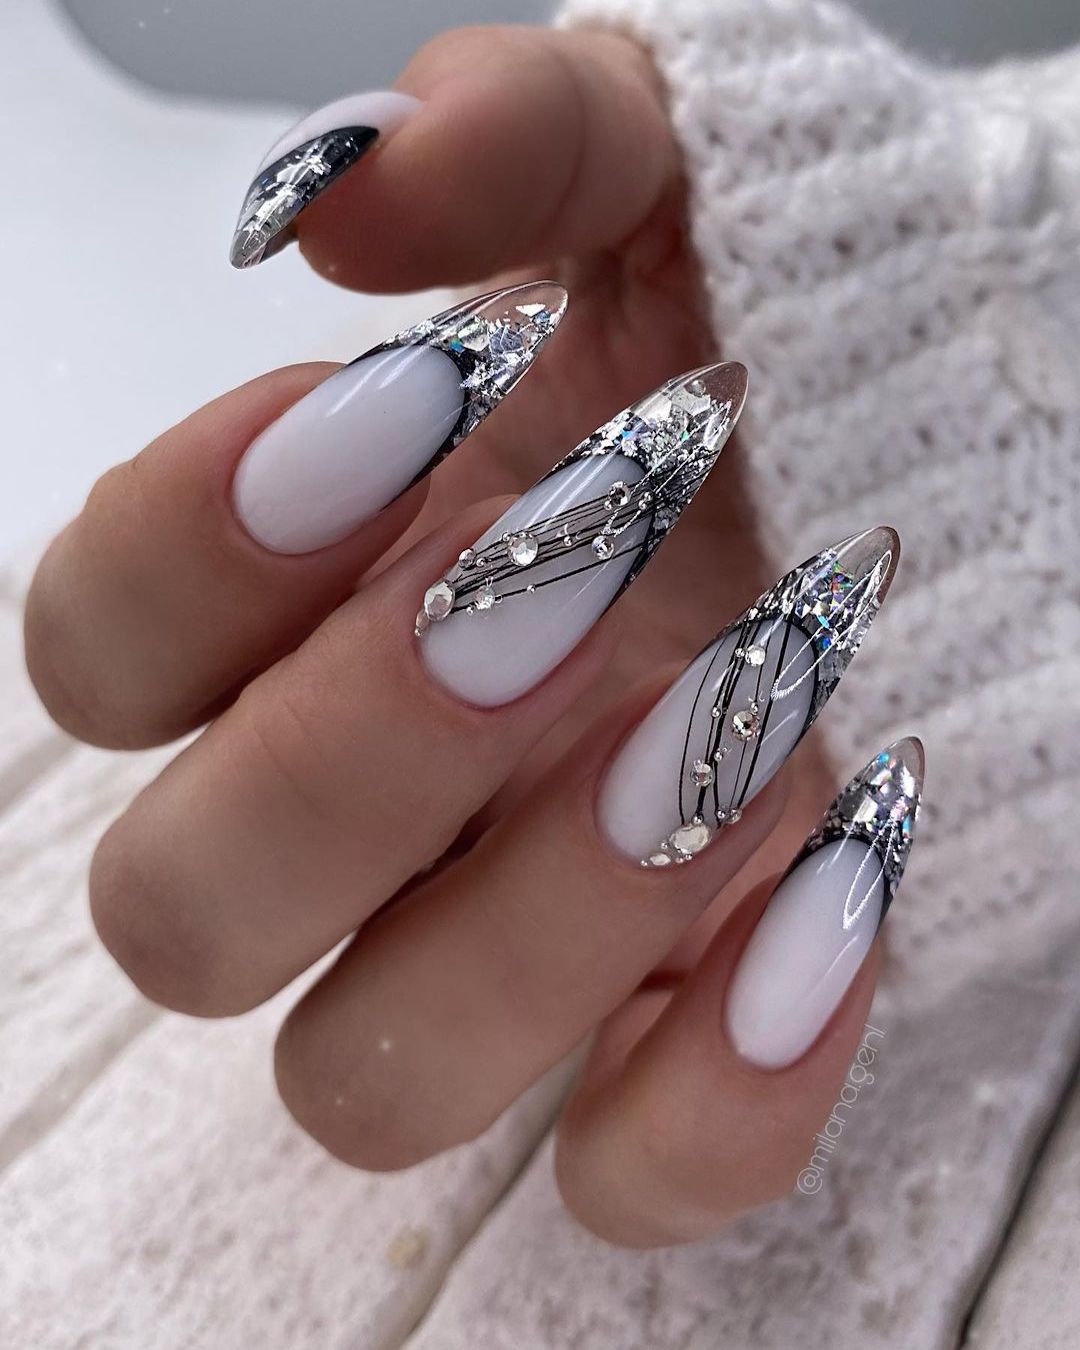 stiletto wedding nails designs